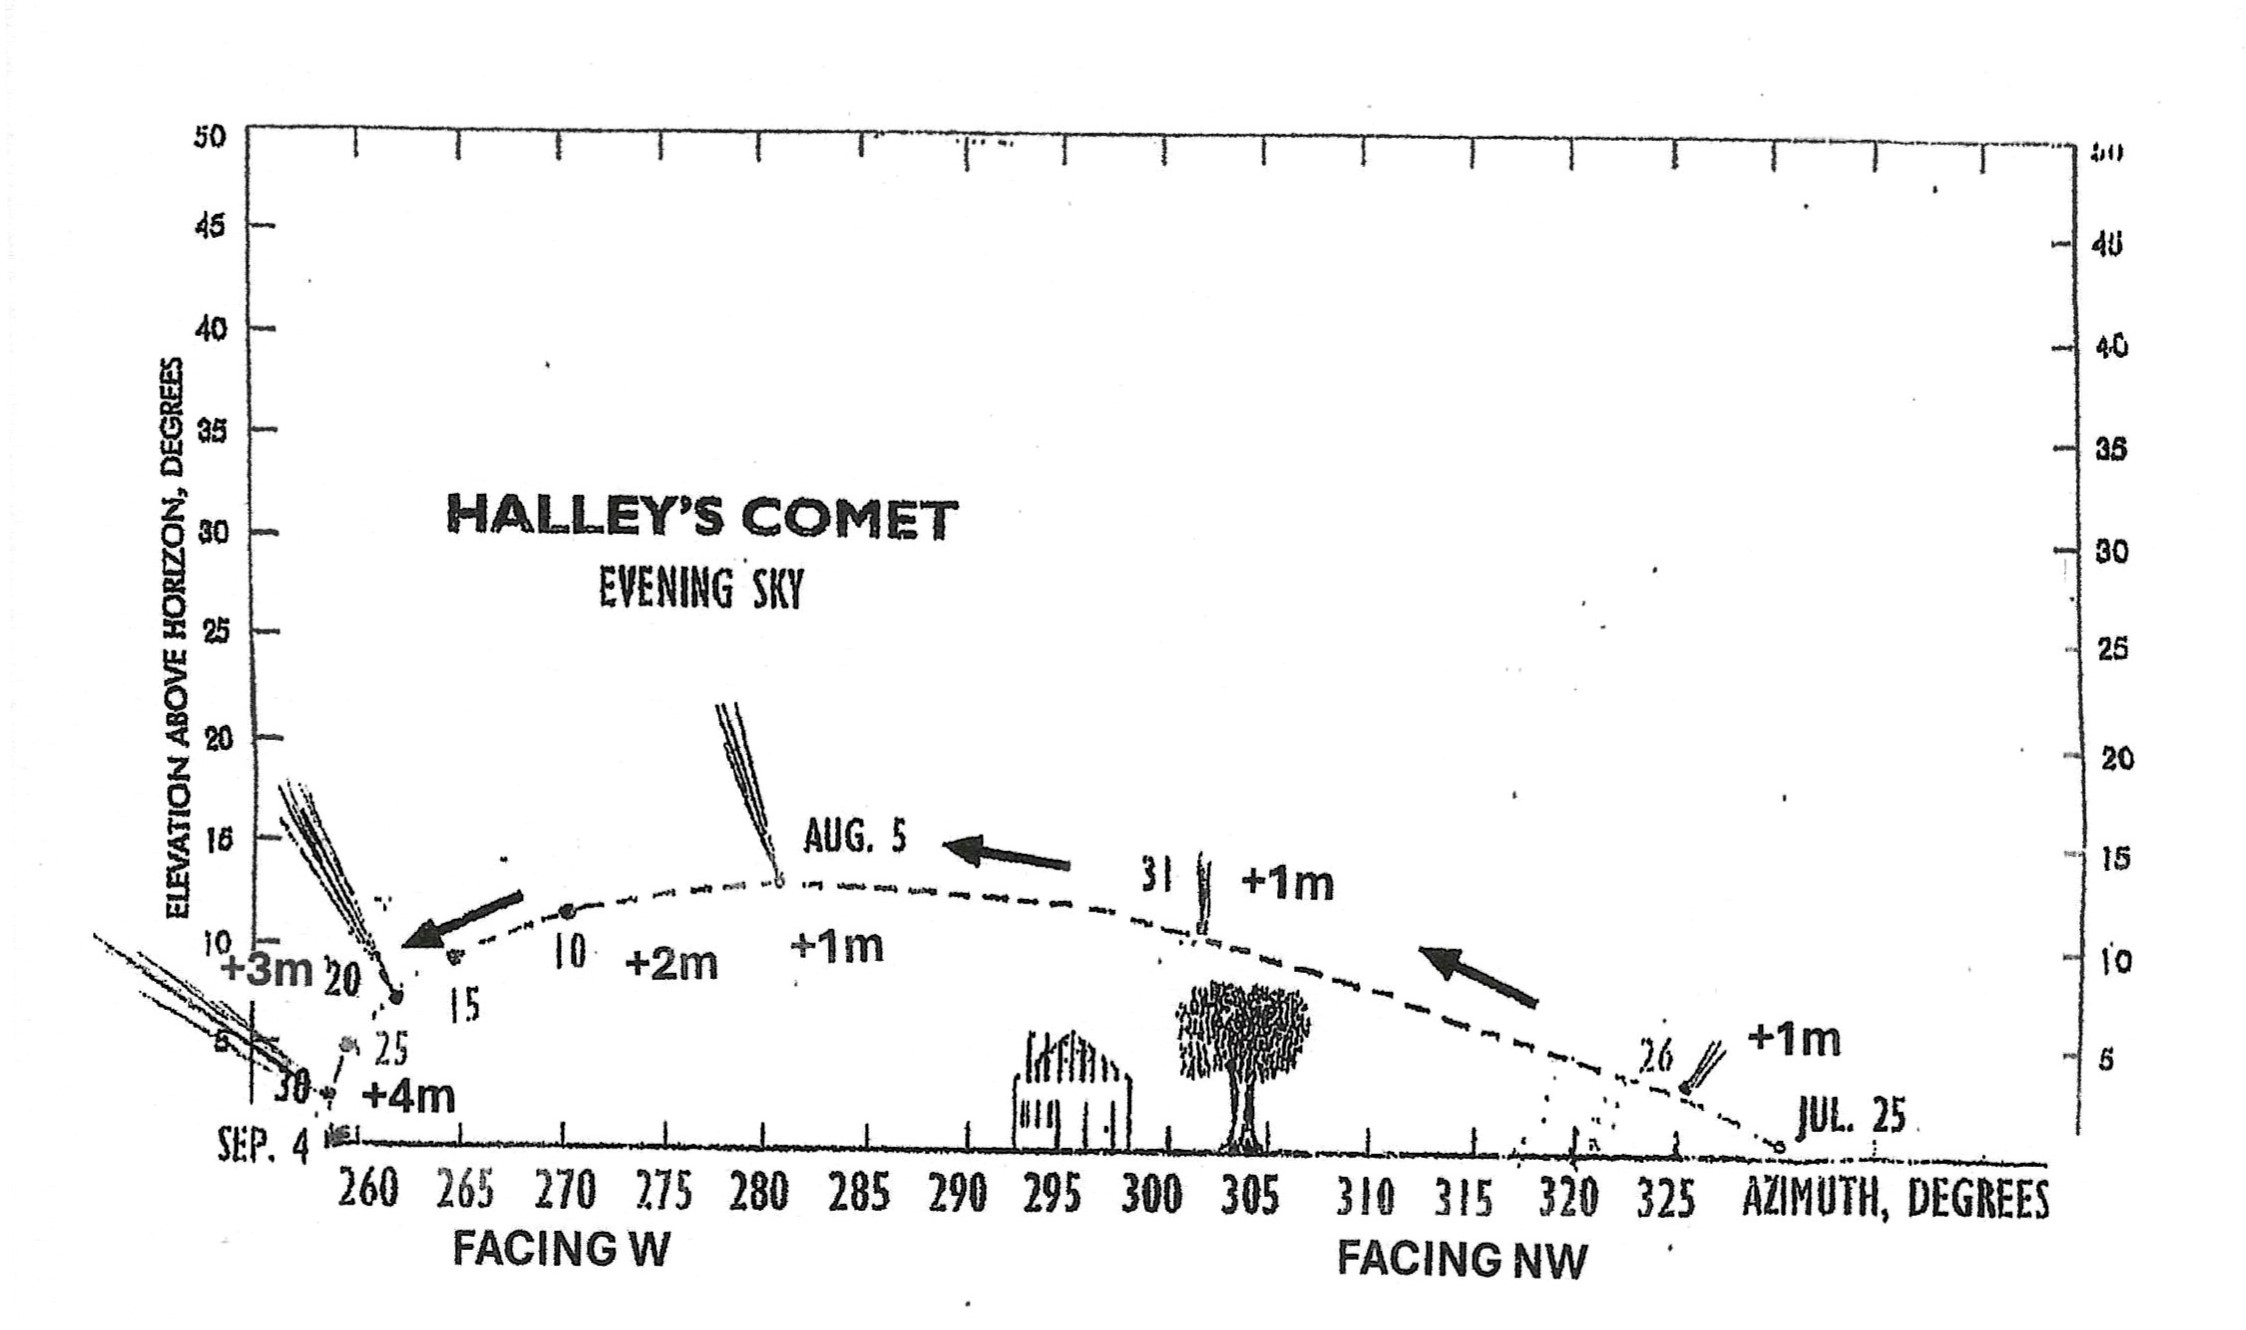 Un gráfico que muestra dónde y cuándo se podrá ver el cometa Halley a finales del verano de 2061